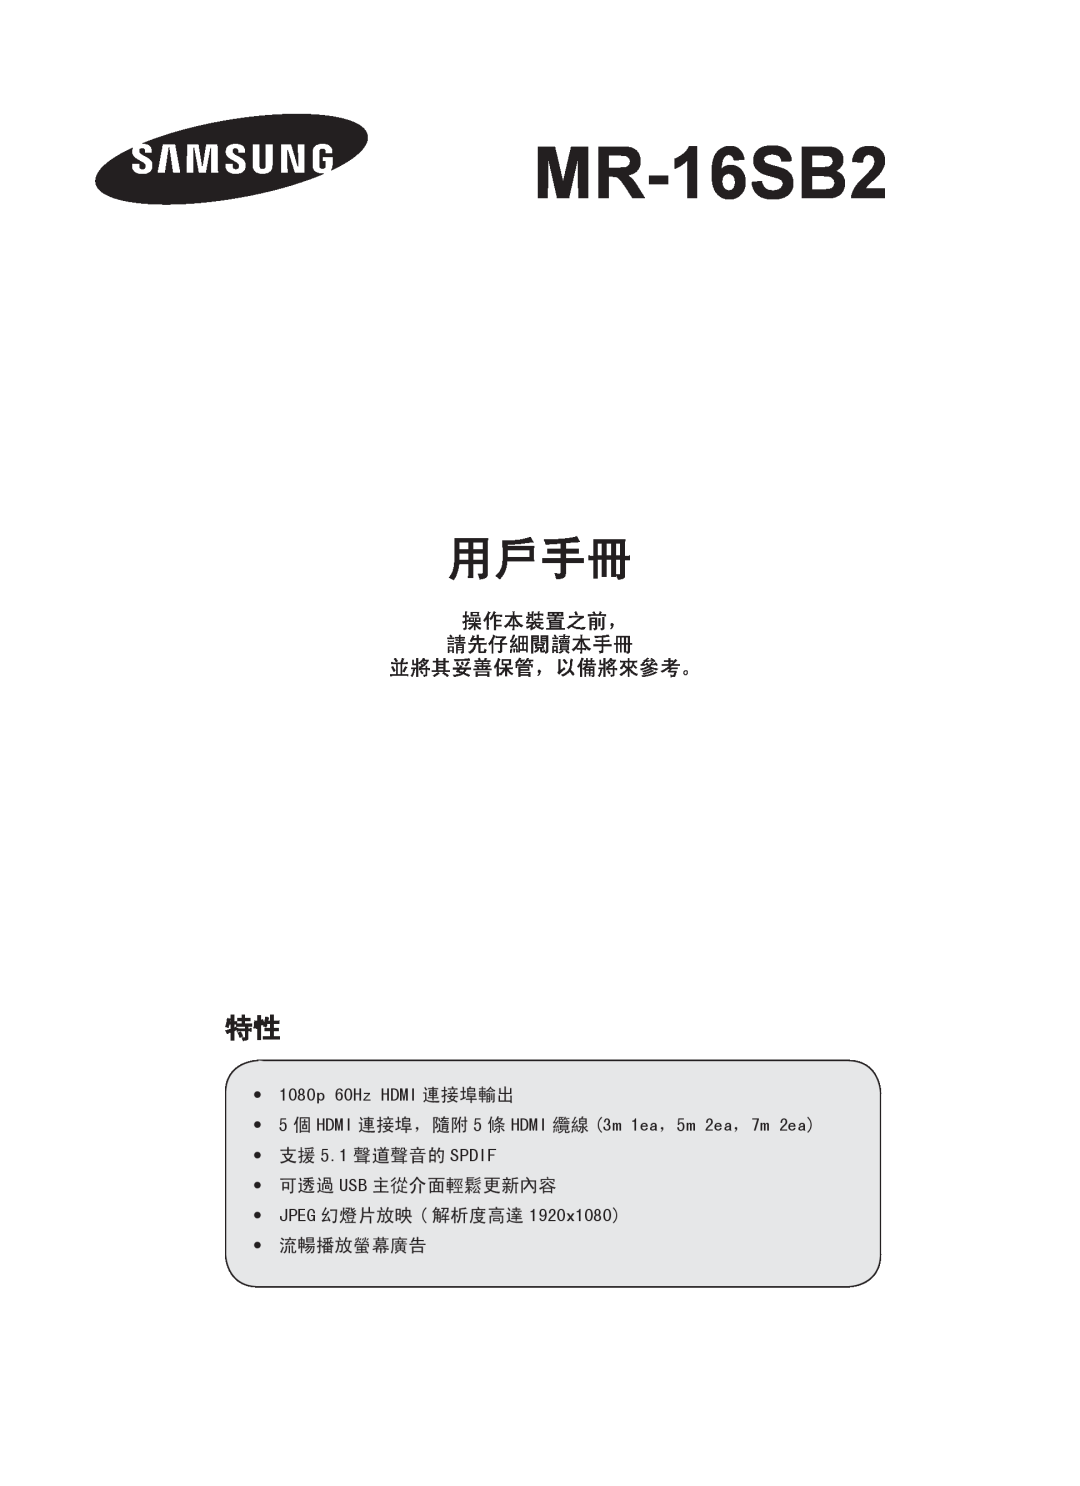 Samsung MR-16SB2 manual 用戶手冊, 操作本裝置之前， 請先仔細閱讀本手冊 並將其妥善保管，以備將來參考。 